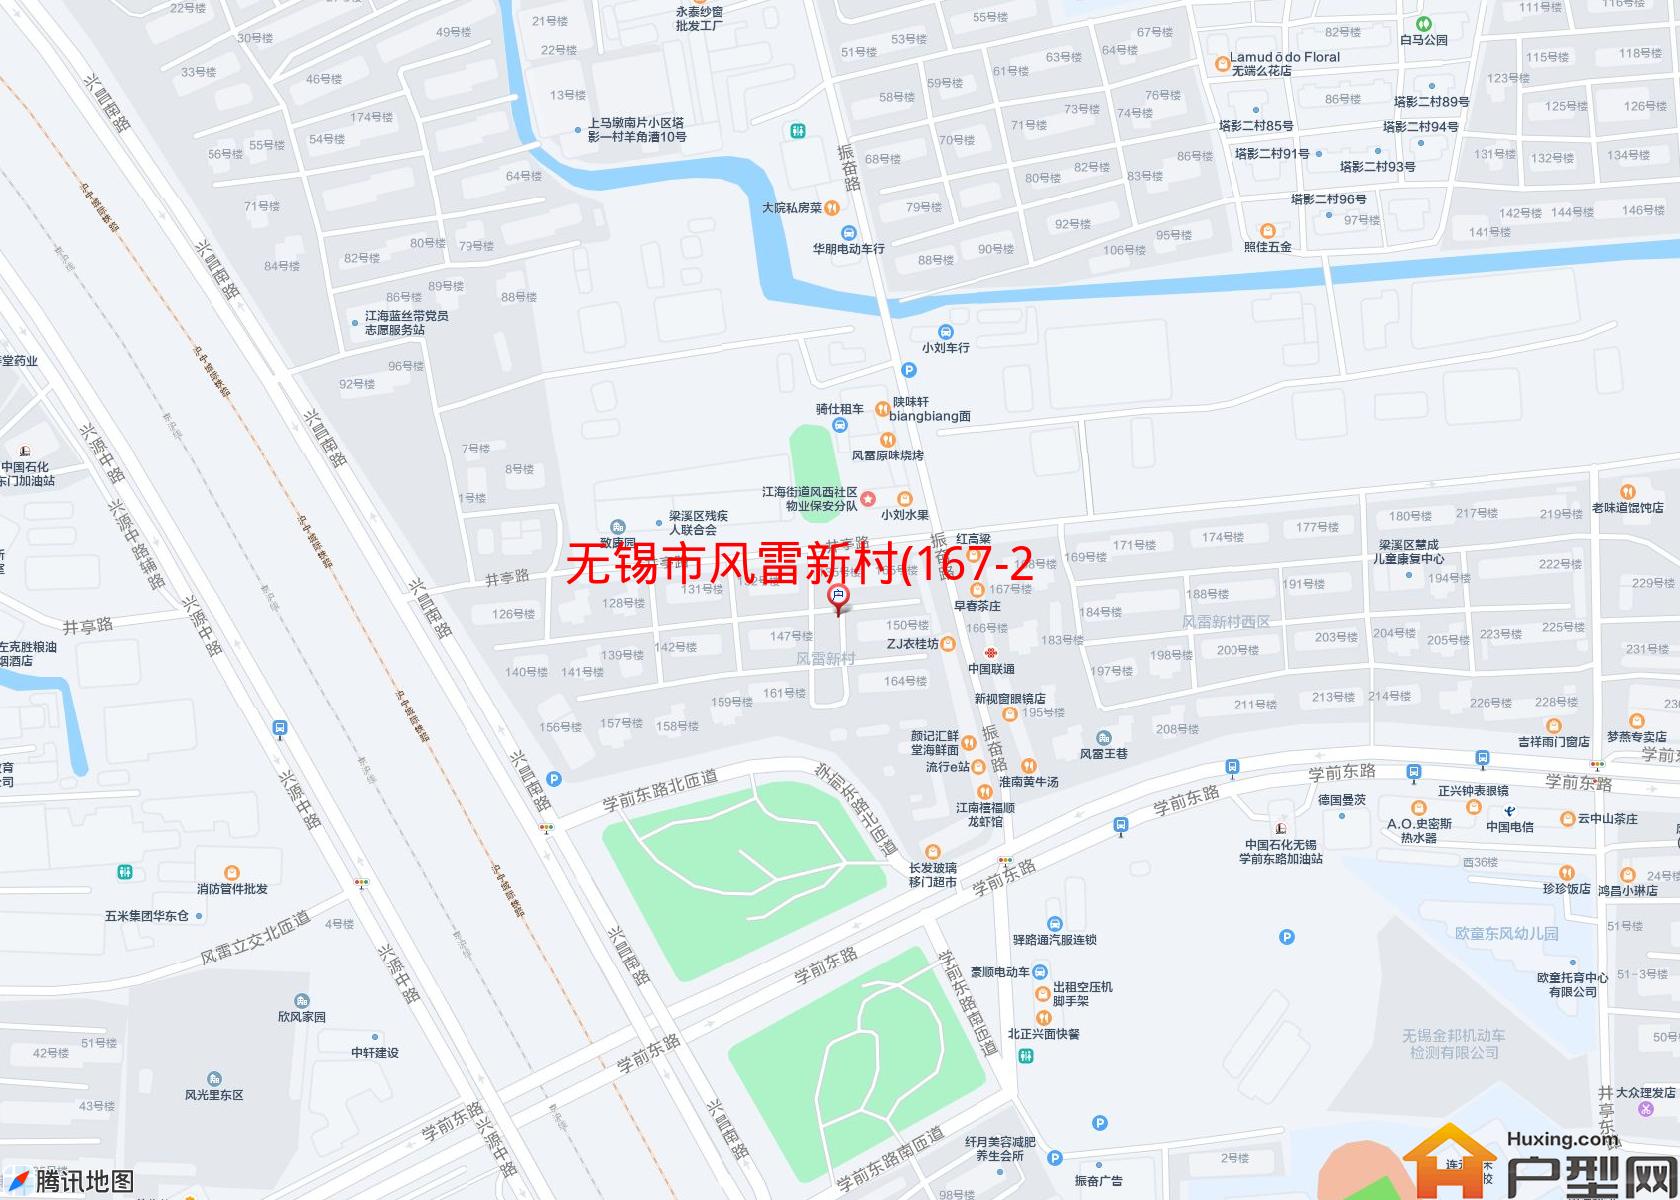 风雷新村(167-228号)小区 - 户型网